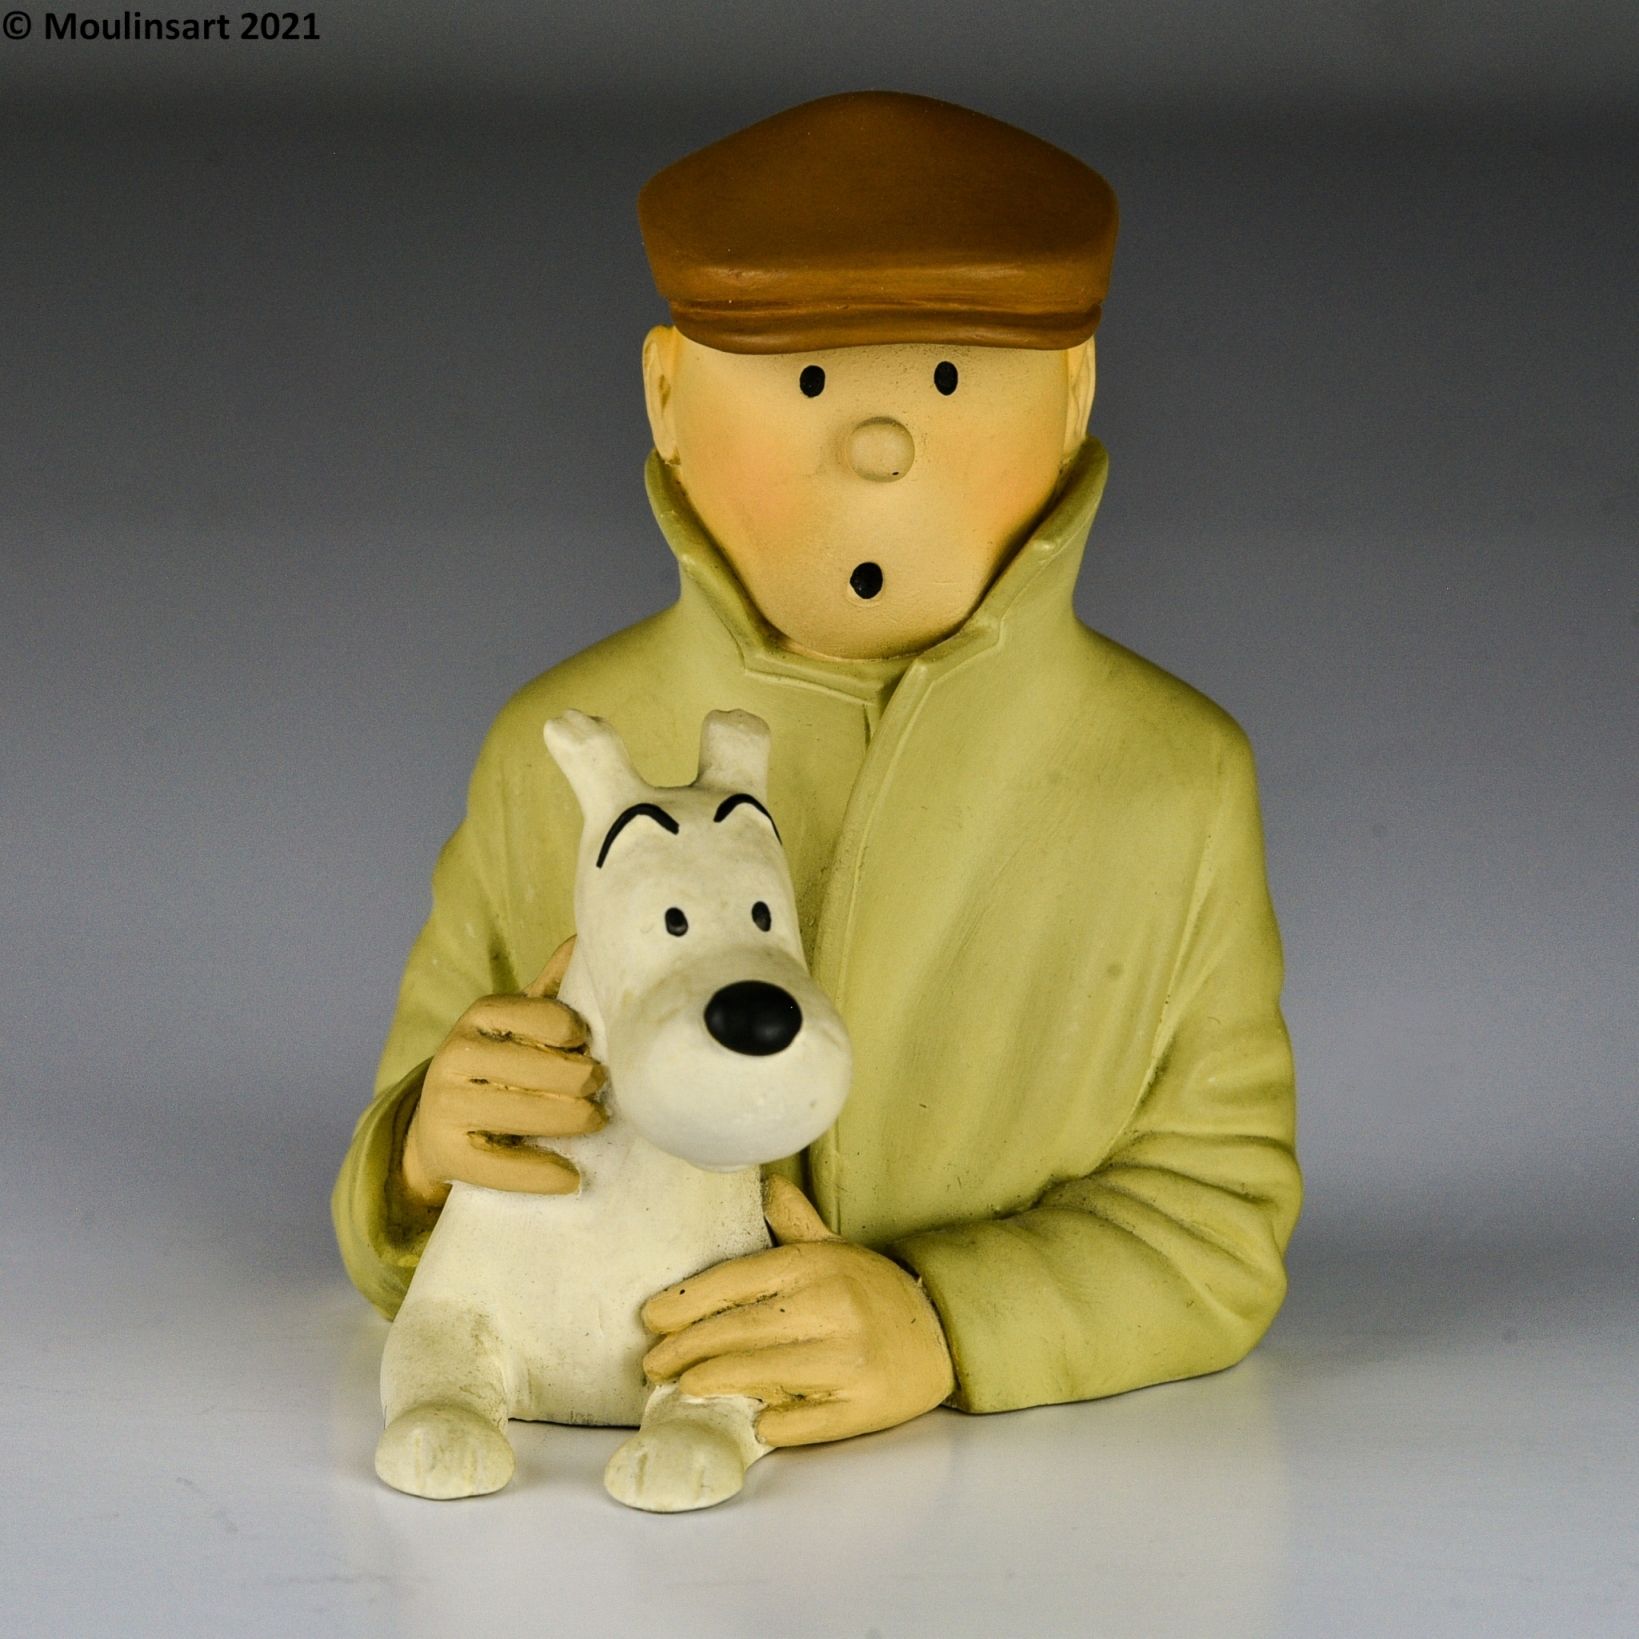 PIXI, Regout PIXI, Regout

Buste Tintin et Milou



Tintin portant un imperméabl&hellip;